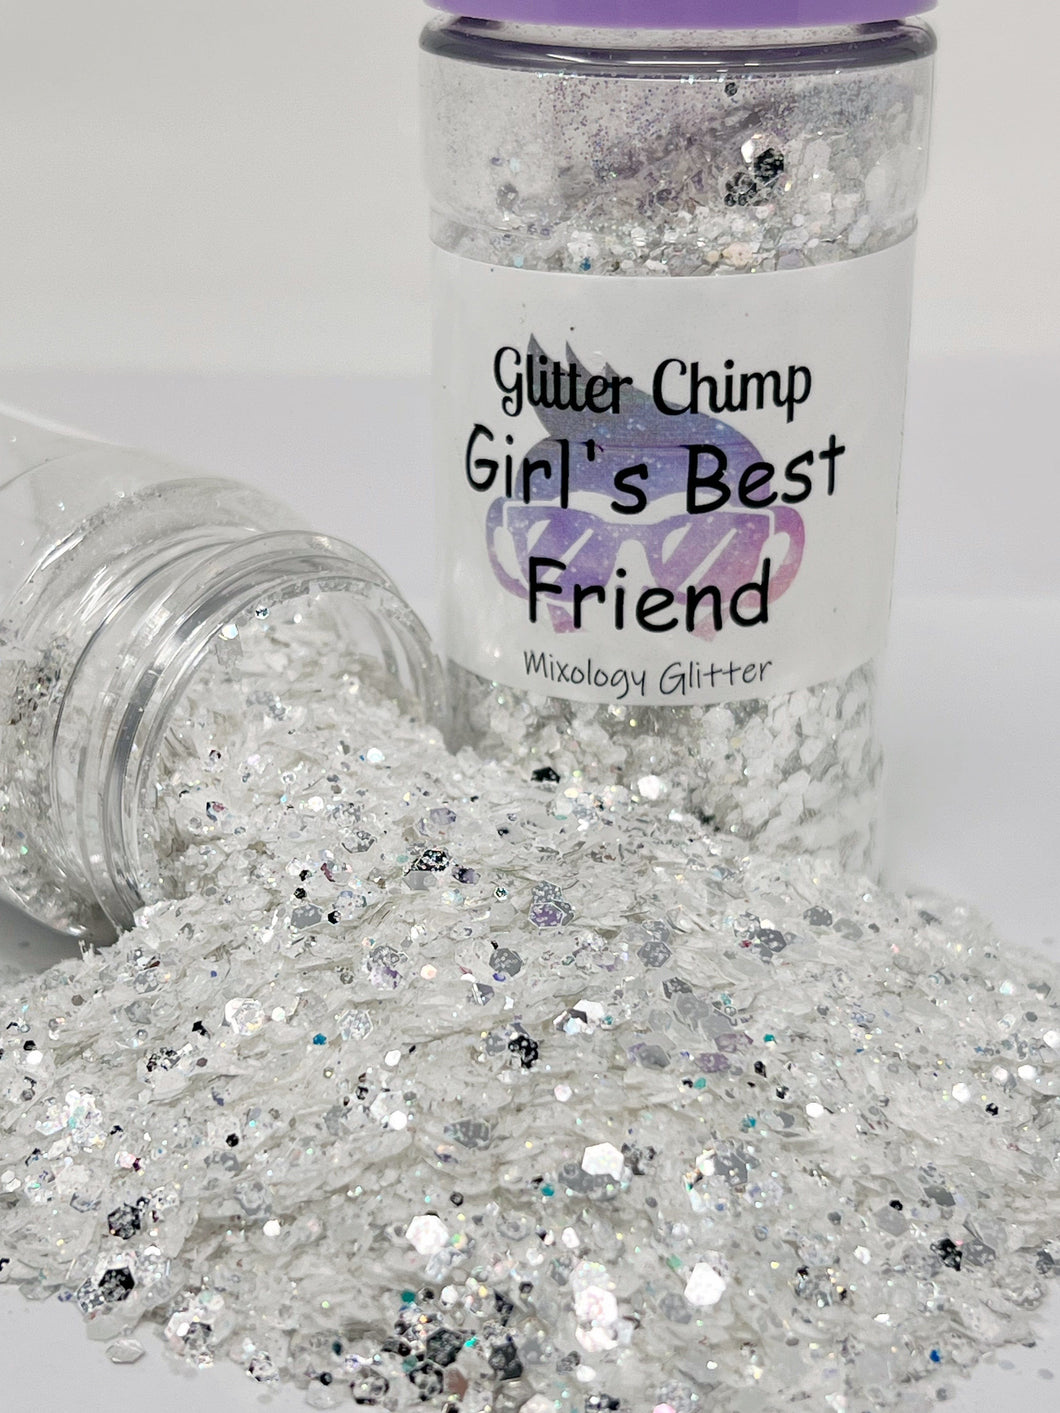 Girl's Best Friend - Mixology Glitter